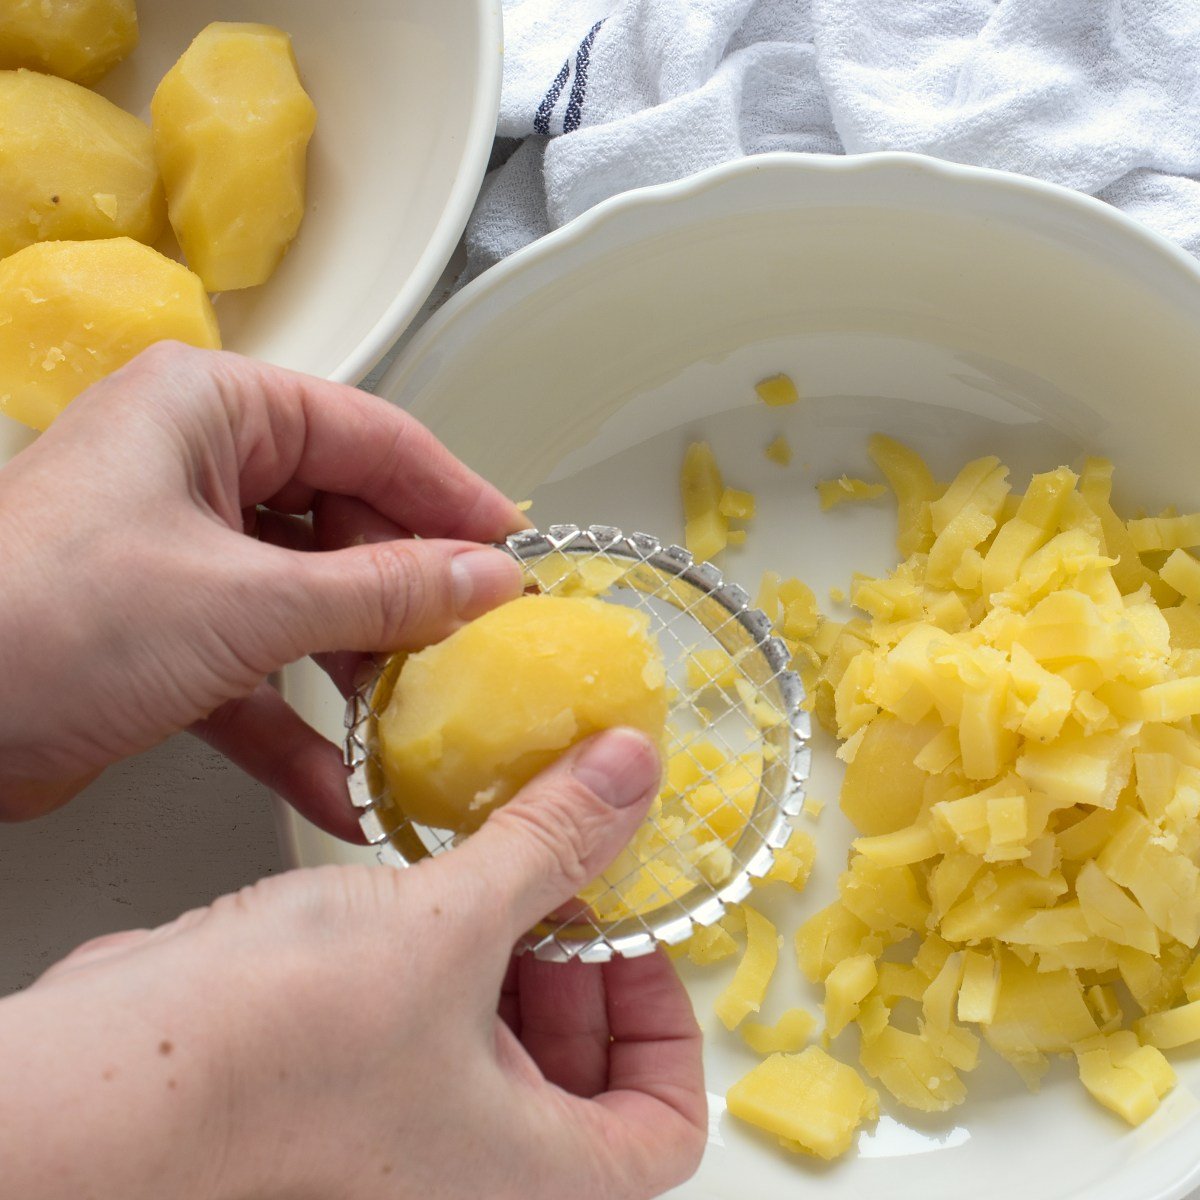 Pressing cooked potato through a potato masher.